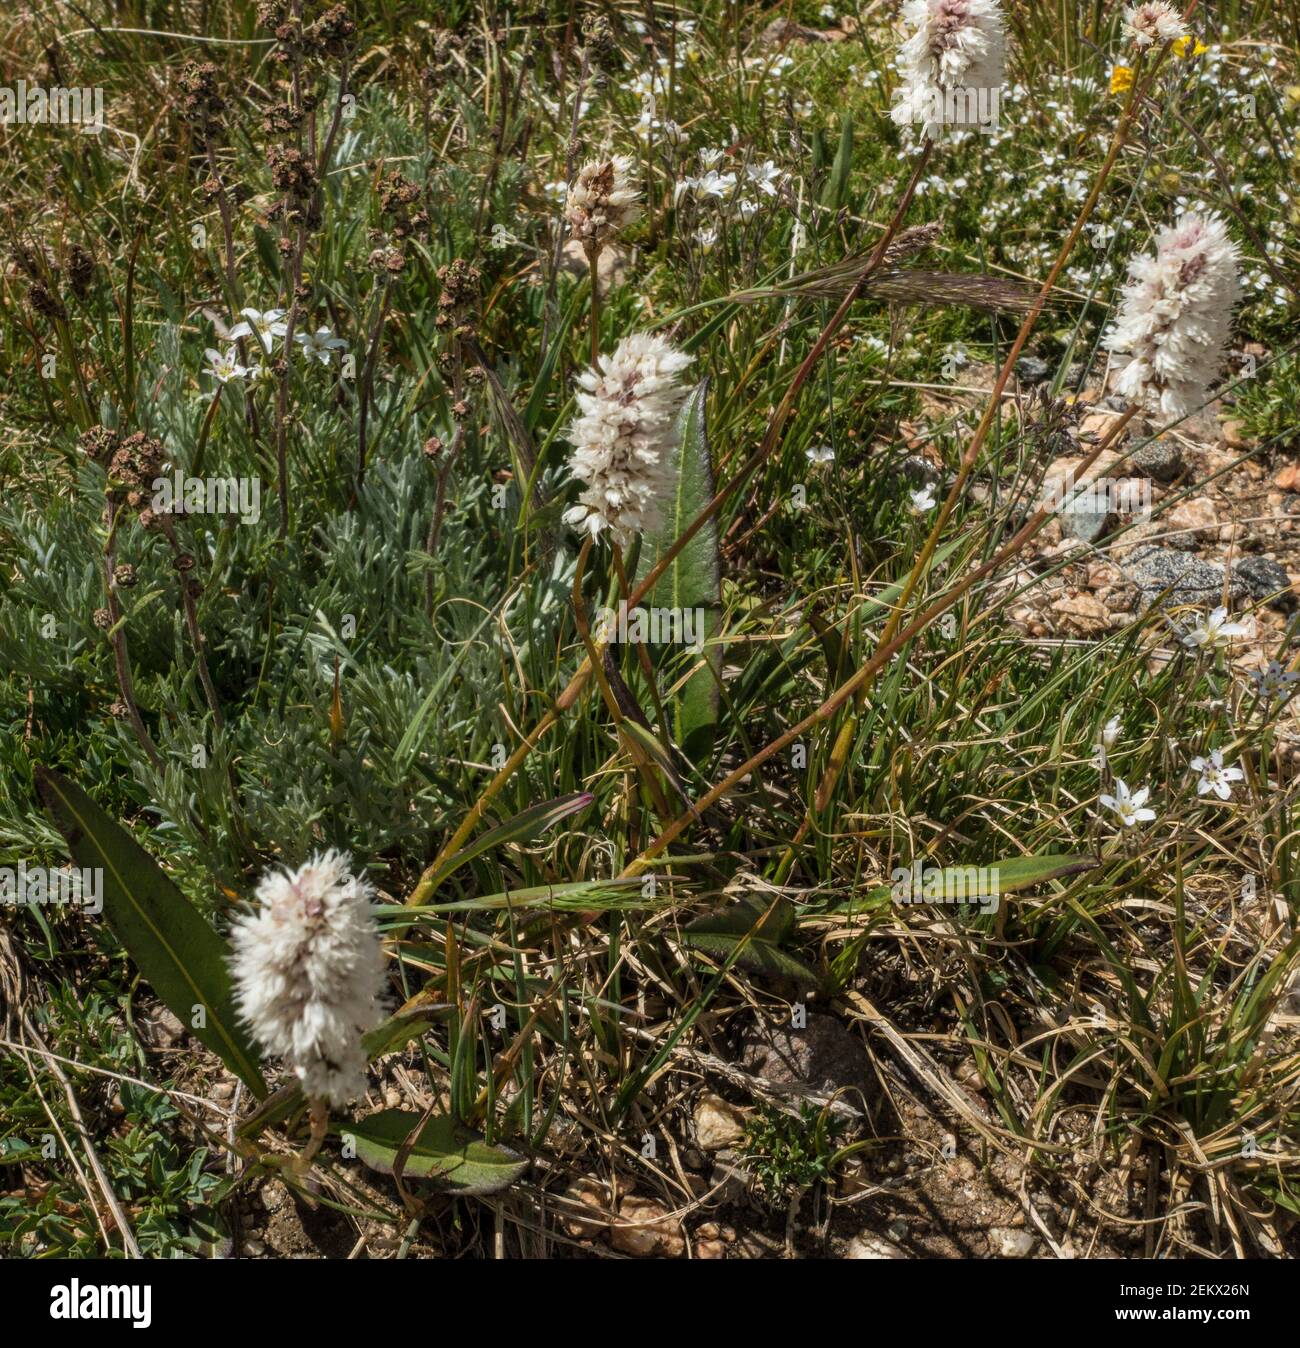 American Bistort Plant, Bistorta bistortoides, famille du sarrasin, Polygonaceae, Parc national des montagnes Rocheuses, Colorado, États-Unis d'Amérique Banque D'Images